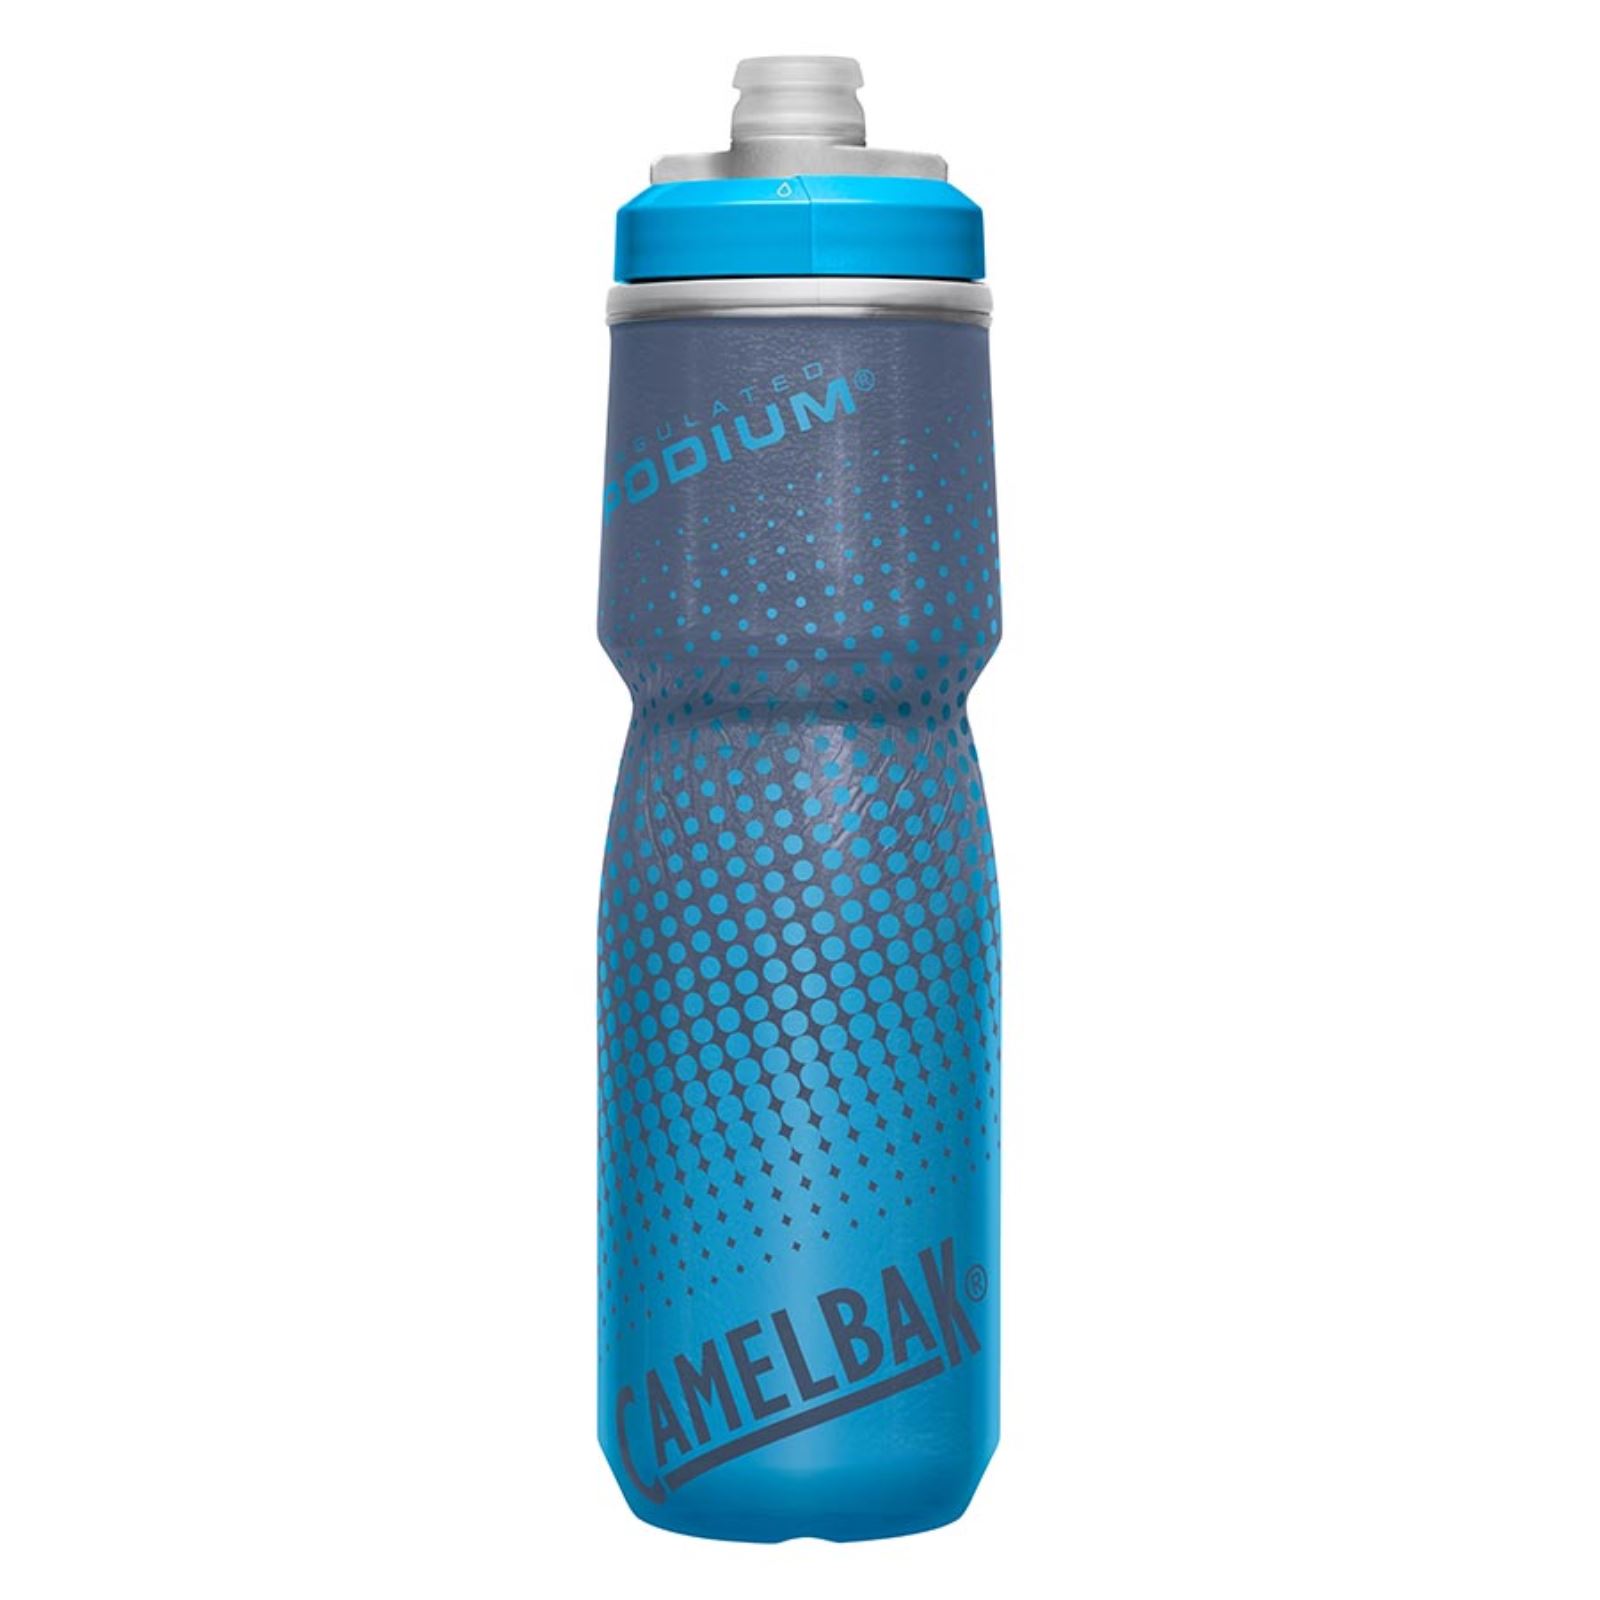 CamelBak Podium Chill 24oz Water Bottle - 710ml/24oz - Blue Dot